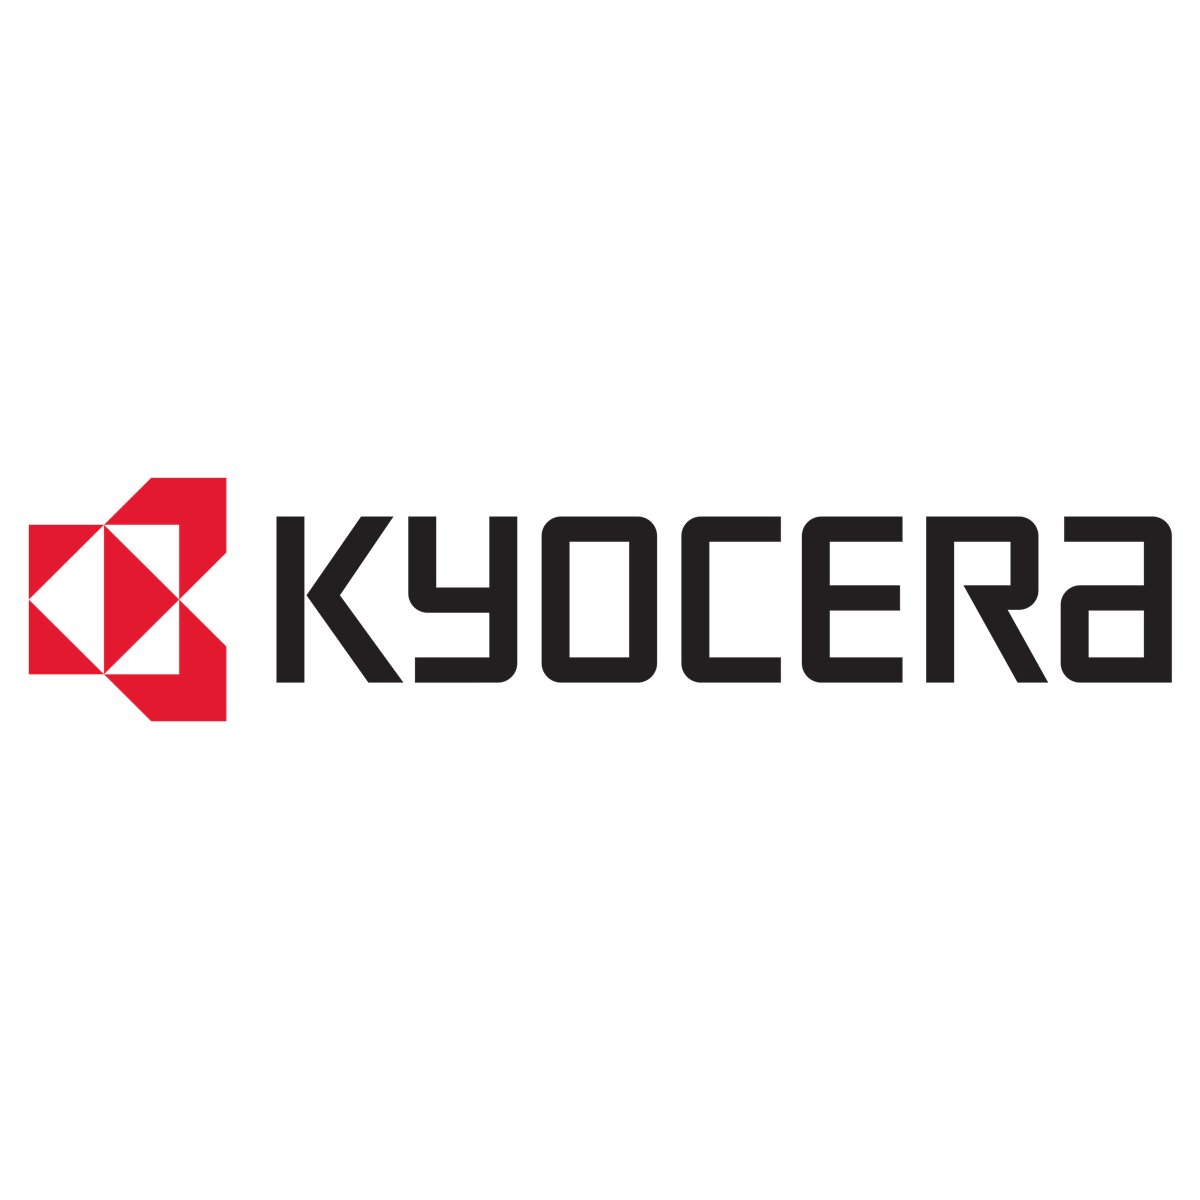 Kyocera KYOeasyprint - v.3.0 - Lizenz 10 Geräte